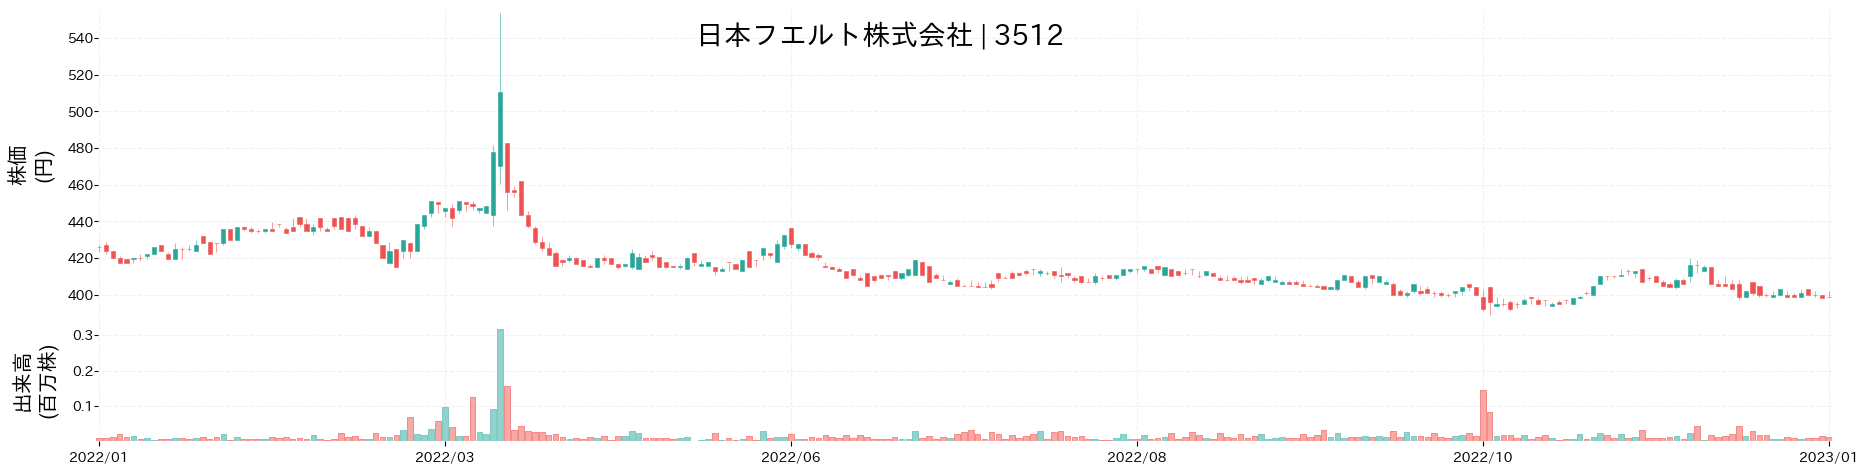 日本フエルトの株価推移(2022)